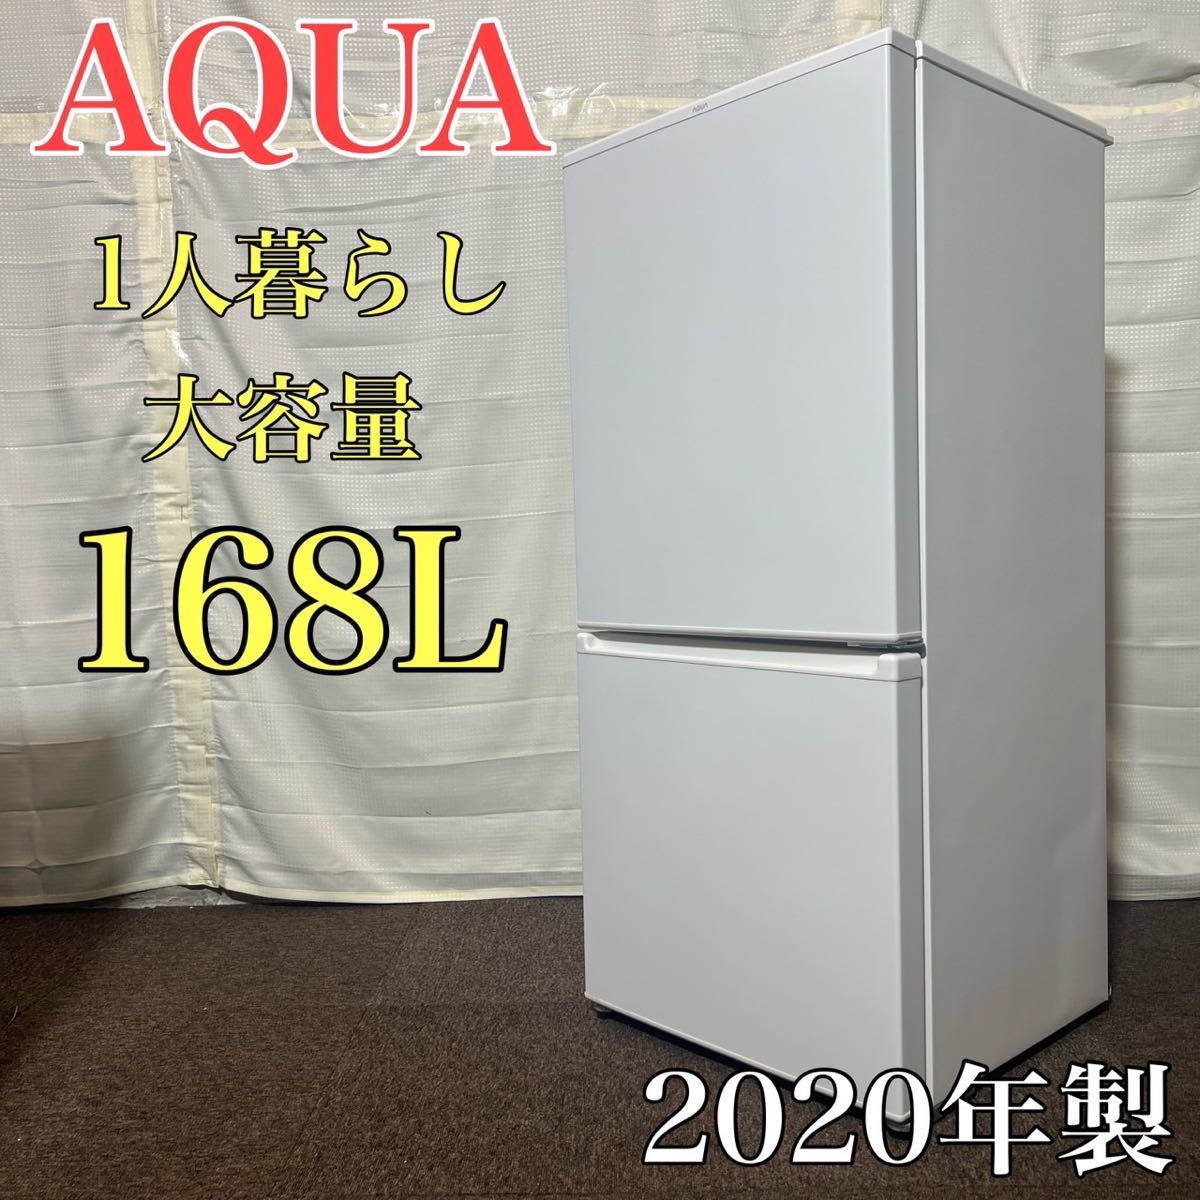 AQUA 冷蔵庫 1人暮らし AQR-17K 2020年製 おしゃれ A0278-